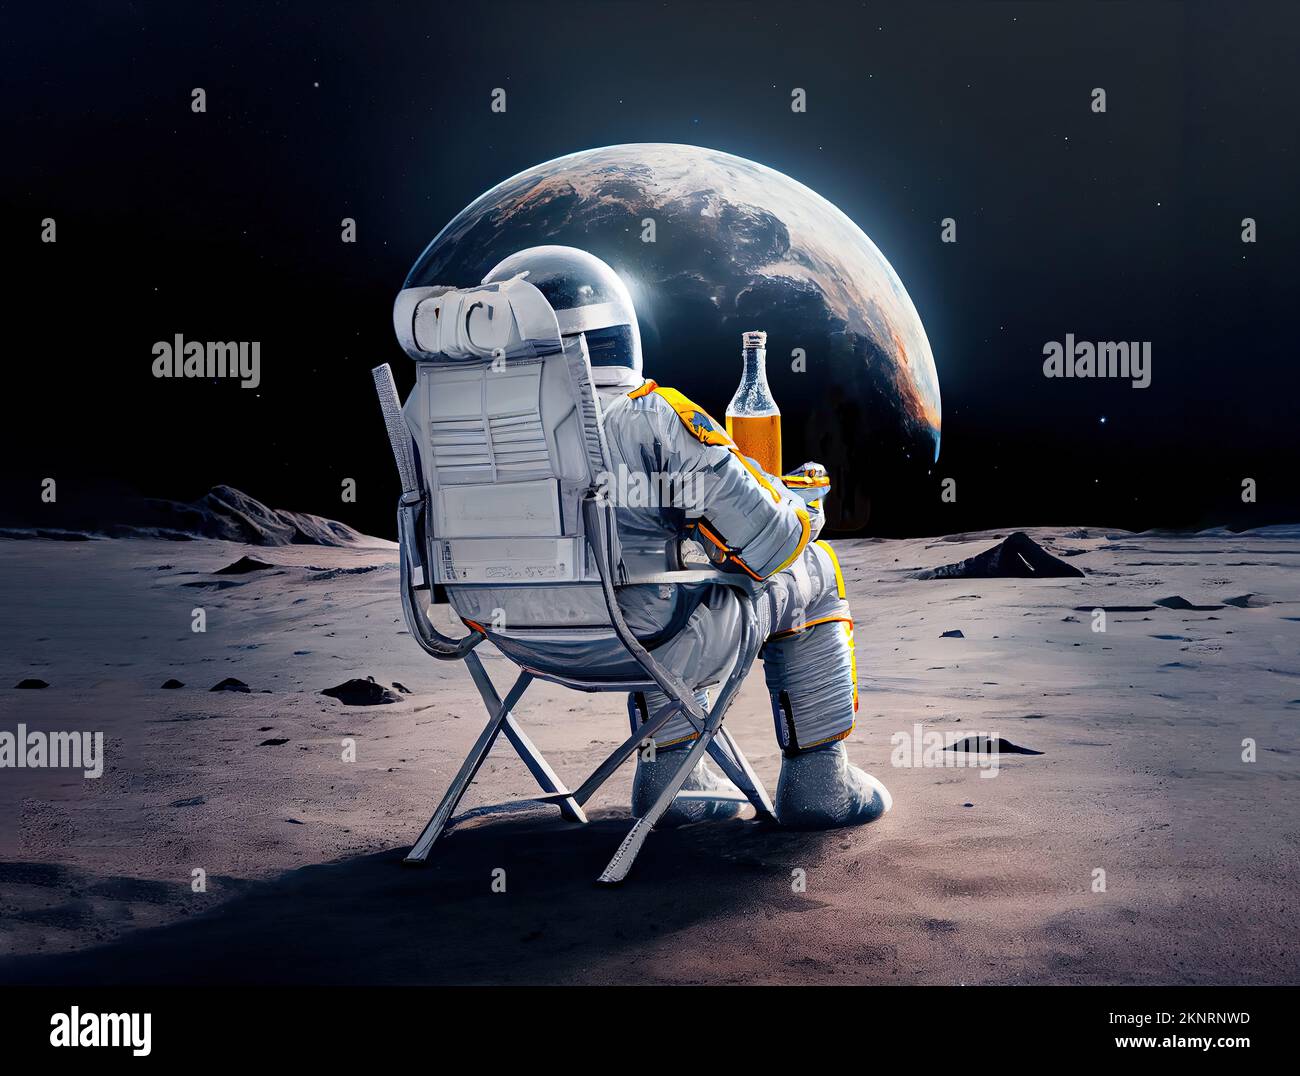 Astronauta sulla luna gustando una birra e rilassandosi mentre si guarda il pianeta terra. Concetto post-lavoro. Concept art generato digitalmente Foto Stock